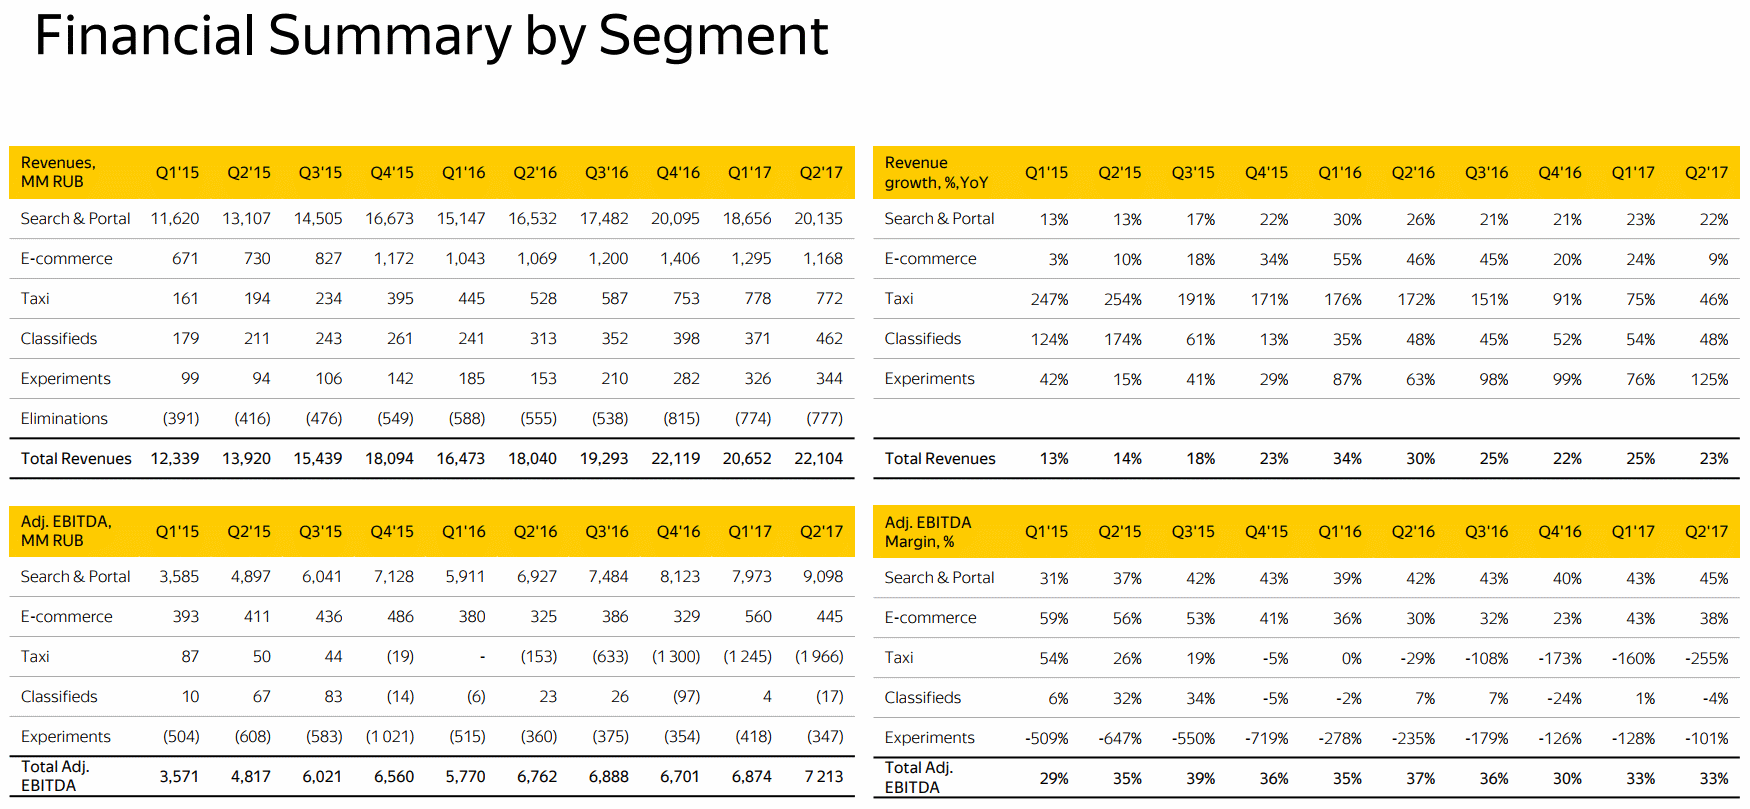 Yandex Financial Summary by Segment